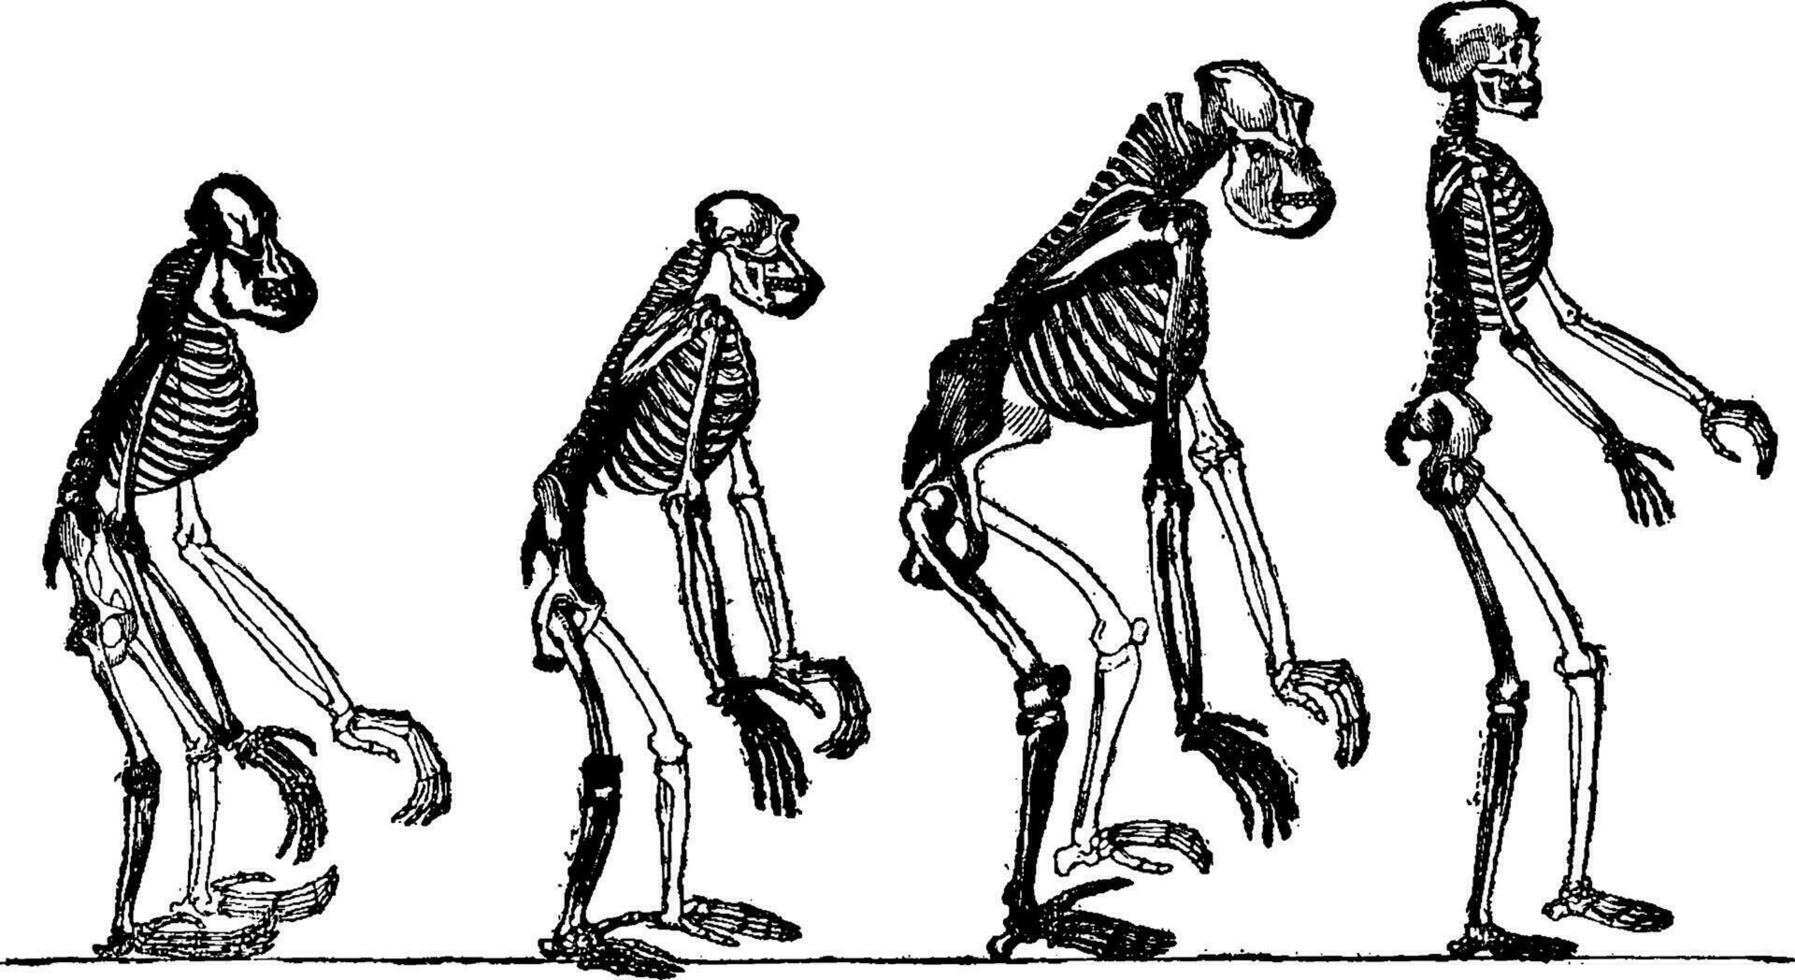 comparado esqueletos de el naranja, chimpancé, gorila y hombre, Clásico grabado. vector